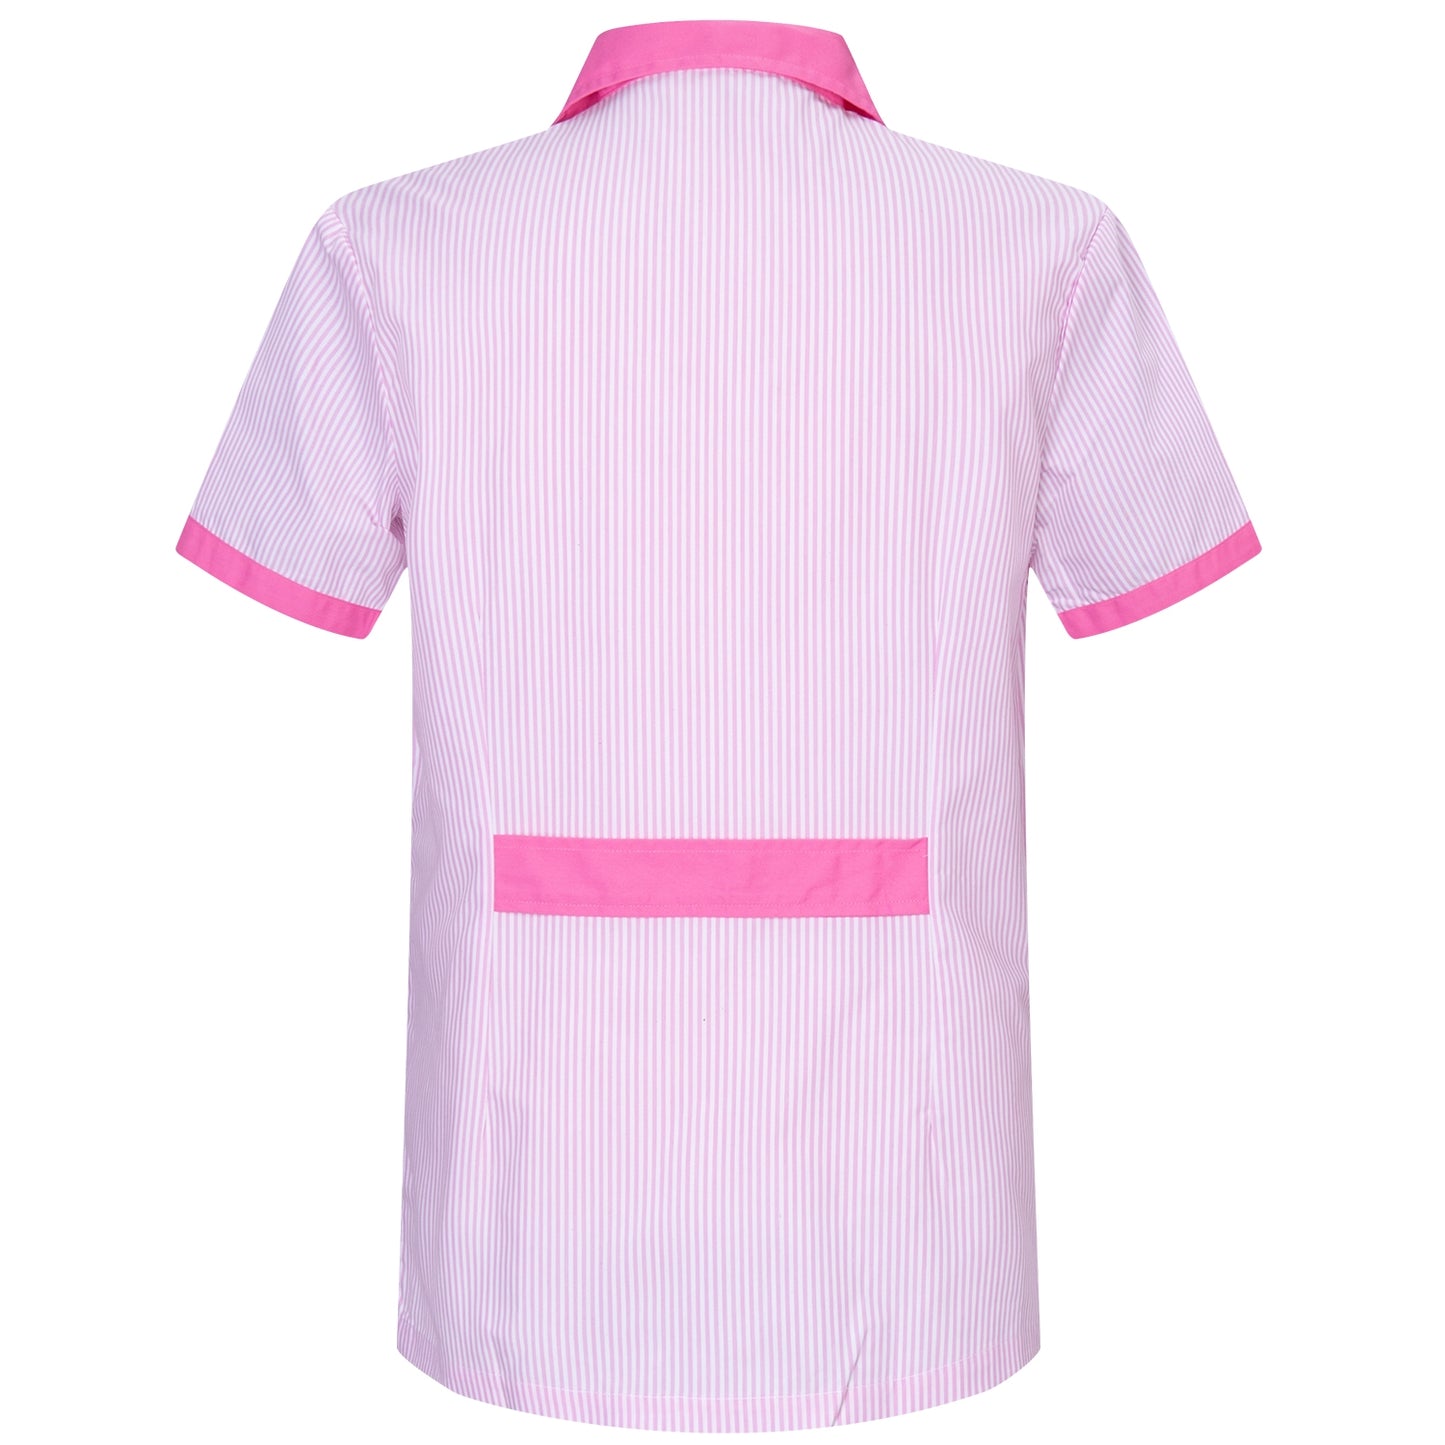 Unisex-Herrenhemd mit Reverskragen, einheitlicher Ästhetik W820